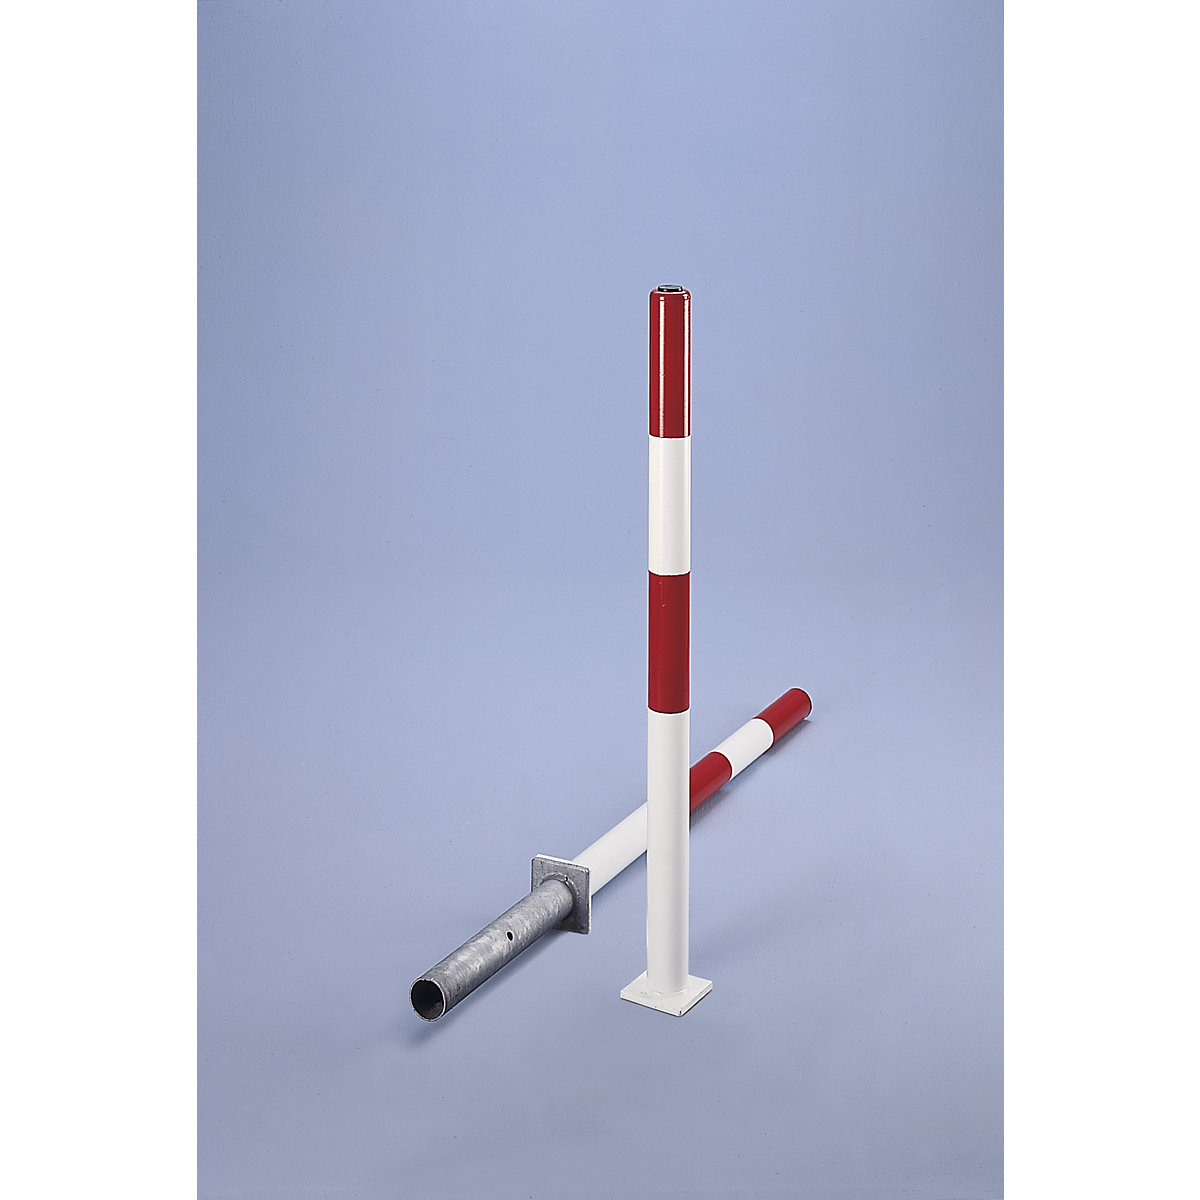 Poste barrera de tubo redondo de acero, rojo / blanco, para encementar, Ø 60 mm, con cerradura de cilindro incl. 3 llaves-2